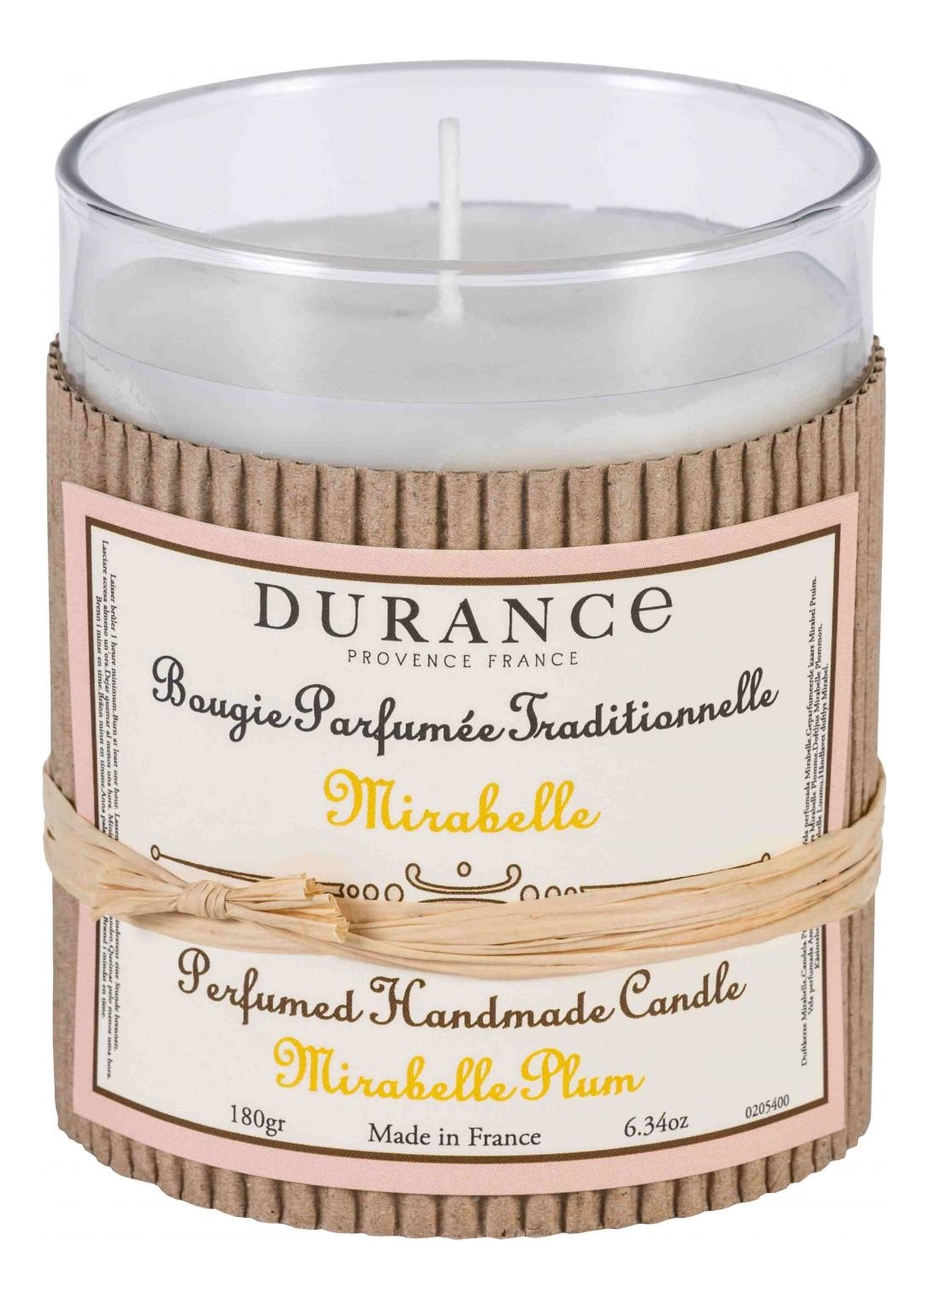 Ароматическая свеча Perfumed Handmade Candle Mirabelle Plum 180г